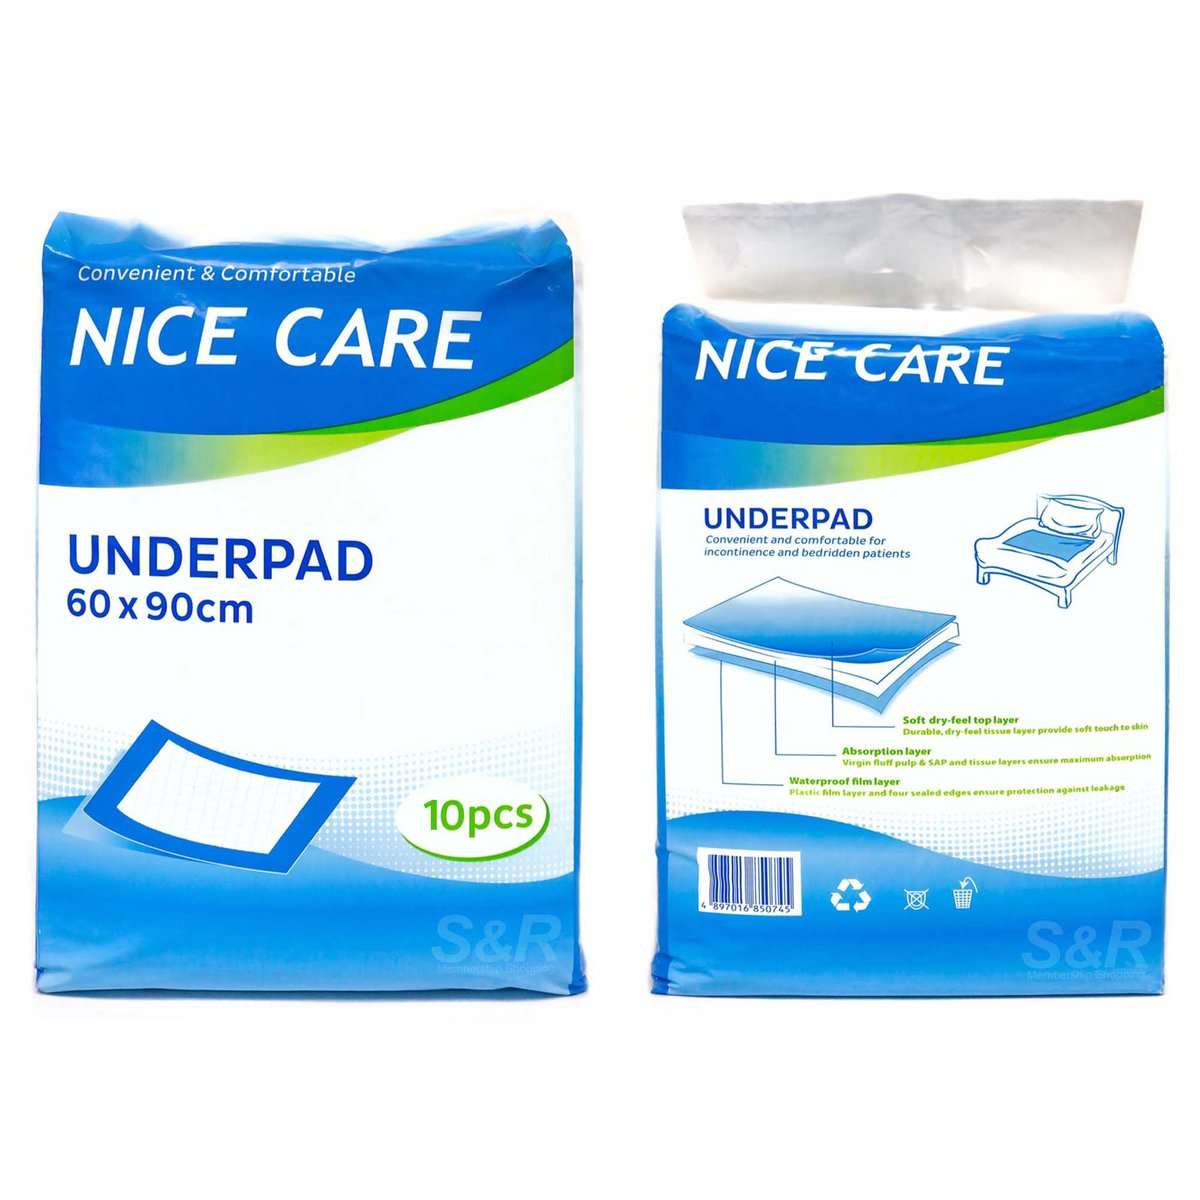 Nice Care Underpad 60 x 90cm 10pcs